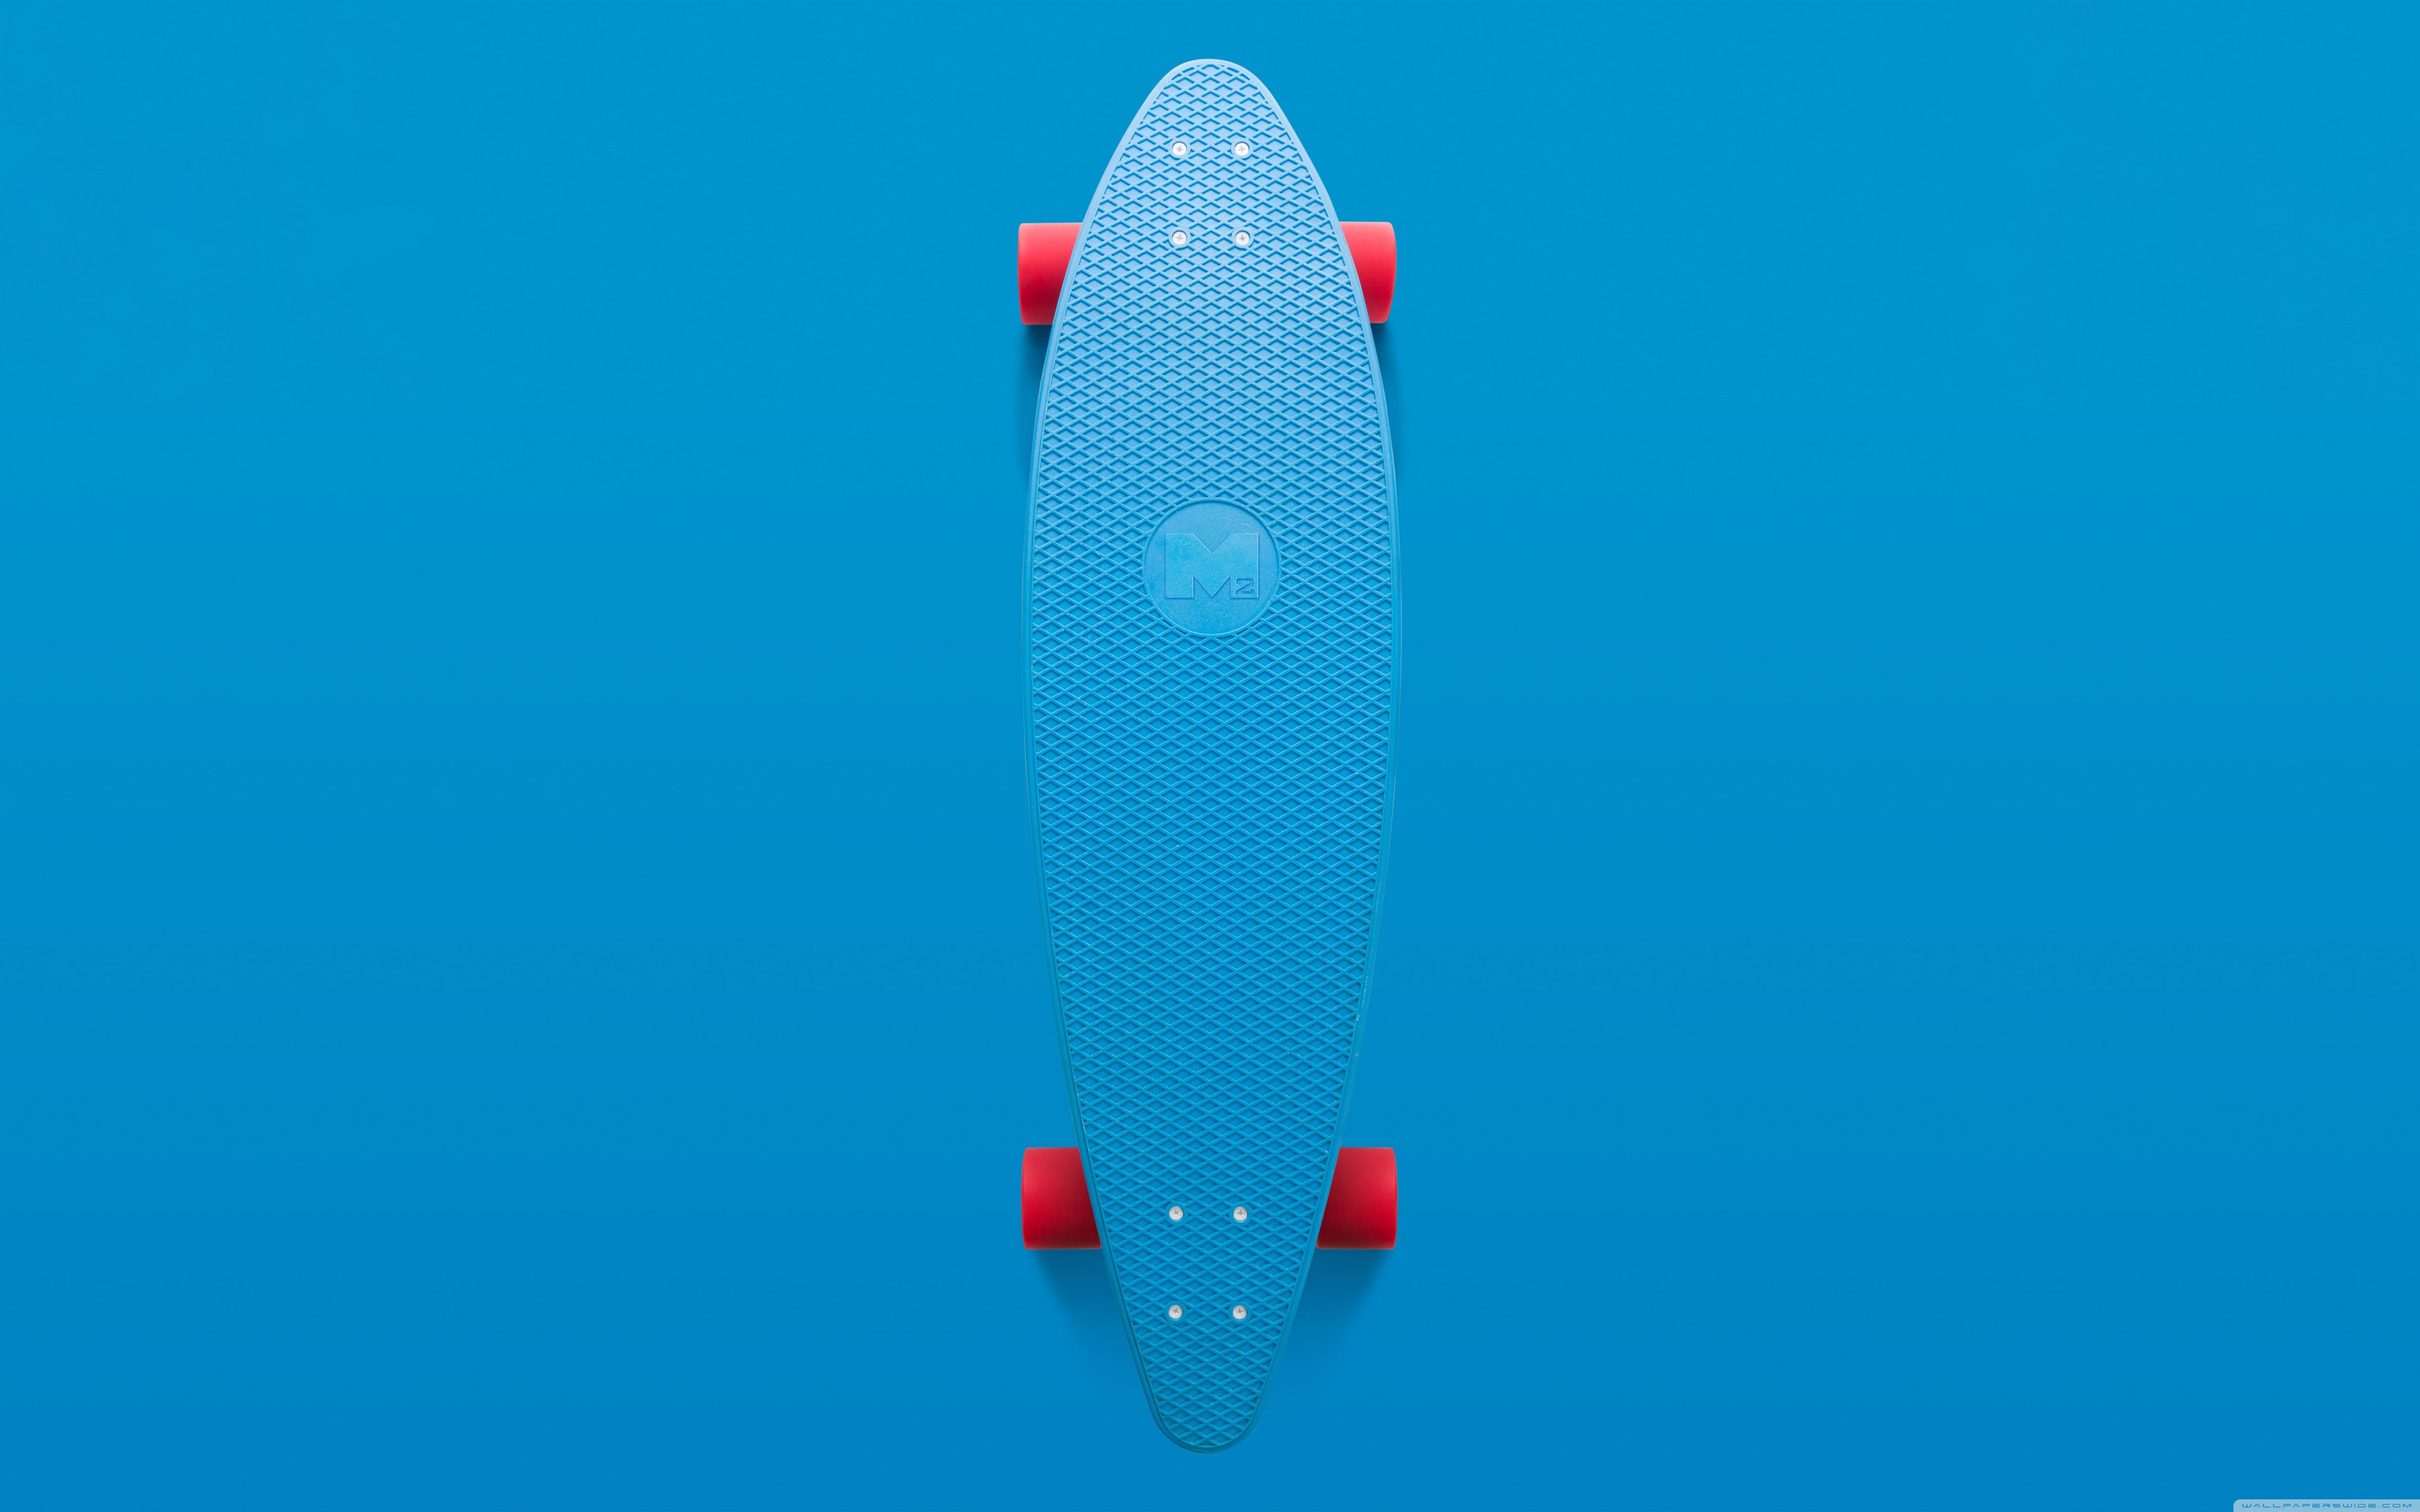 Skateboard Aesthetic Ultra HD Desktop Background Wallpaper for 4K